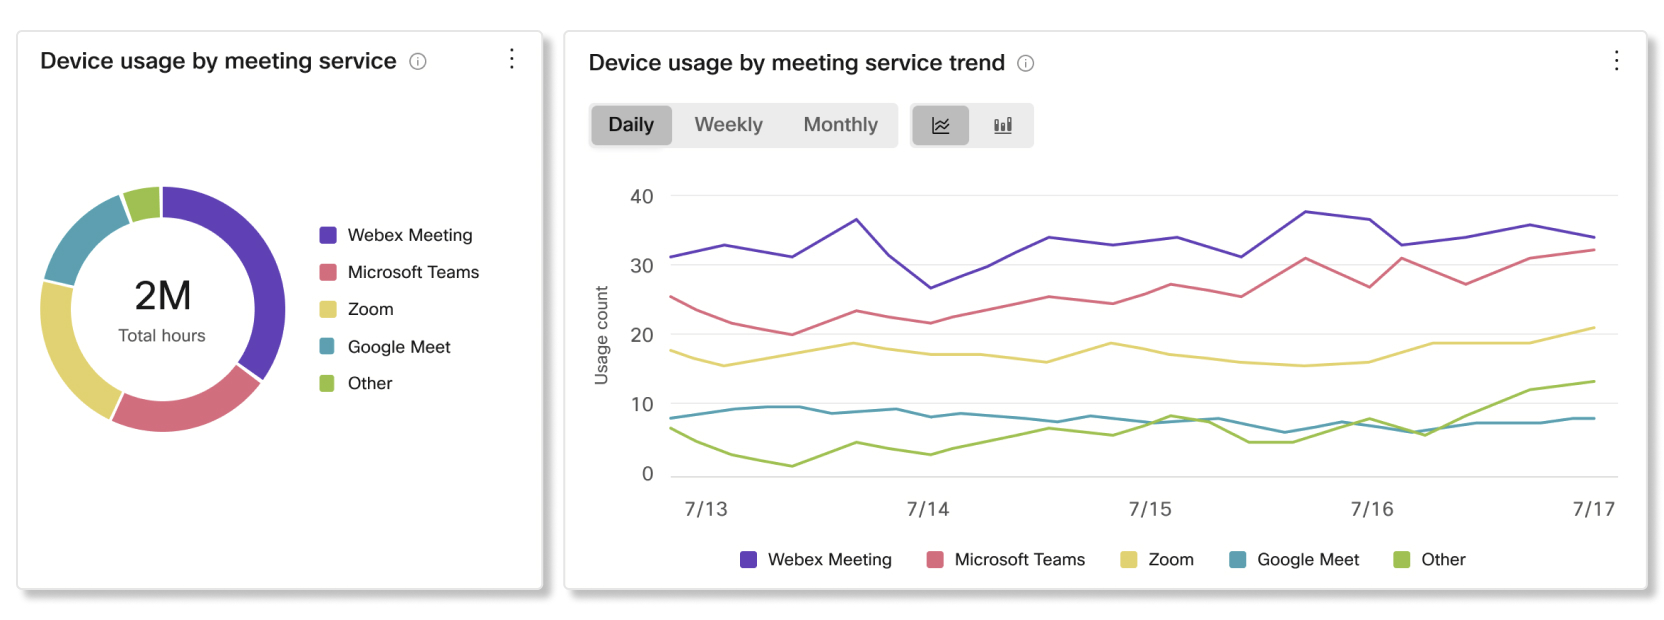 Utilizzo dei dispositivi per servizio di riunione e grafici delle tendenze nell'analisi dei dispositivi di Control Hub